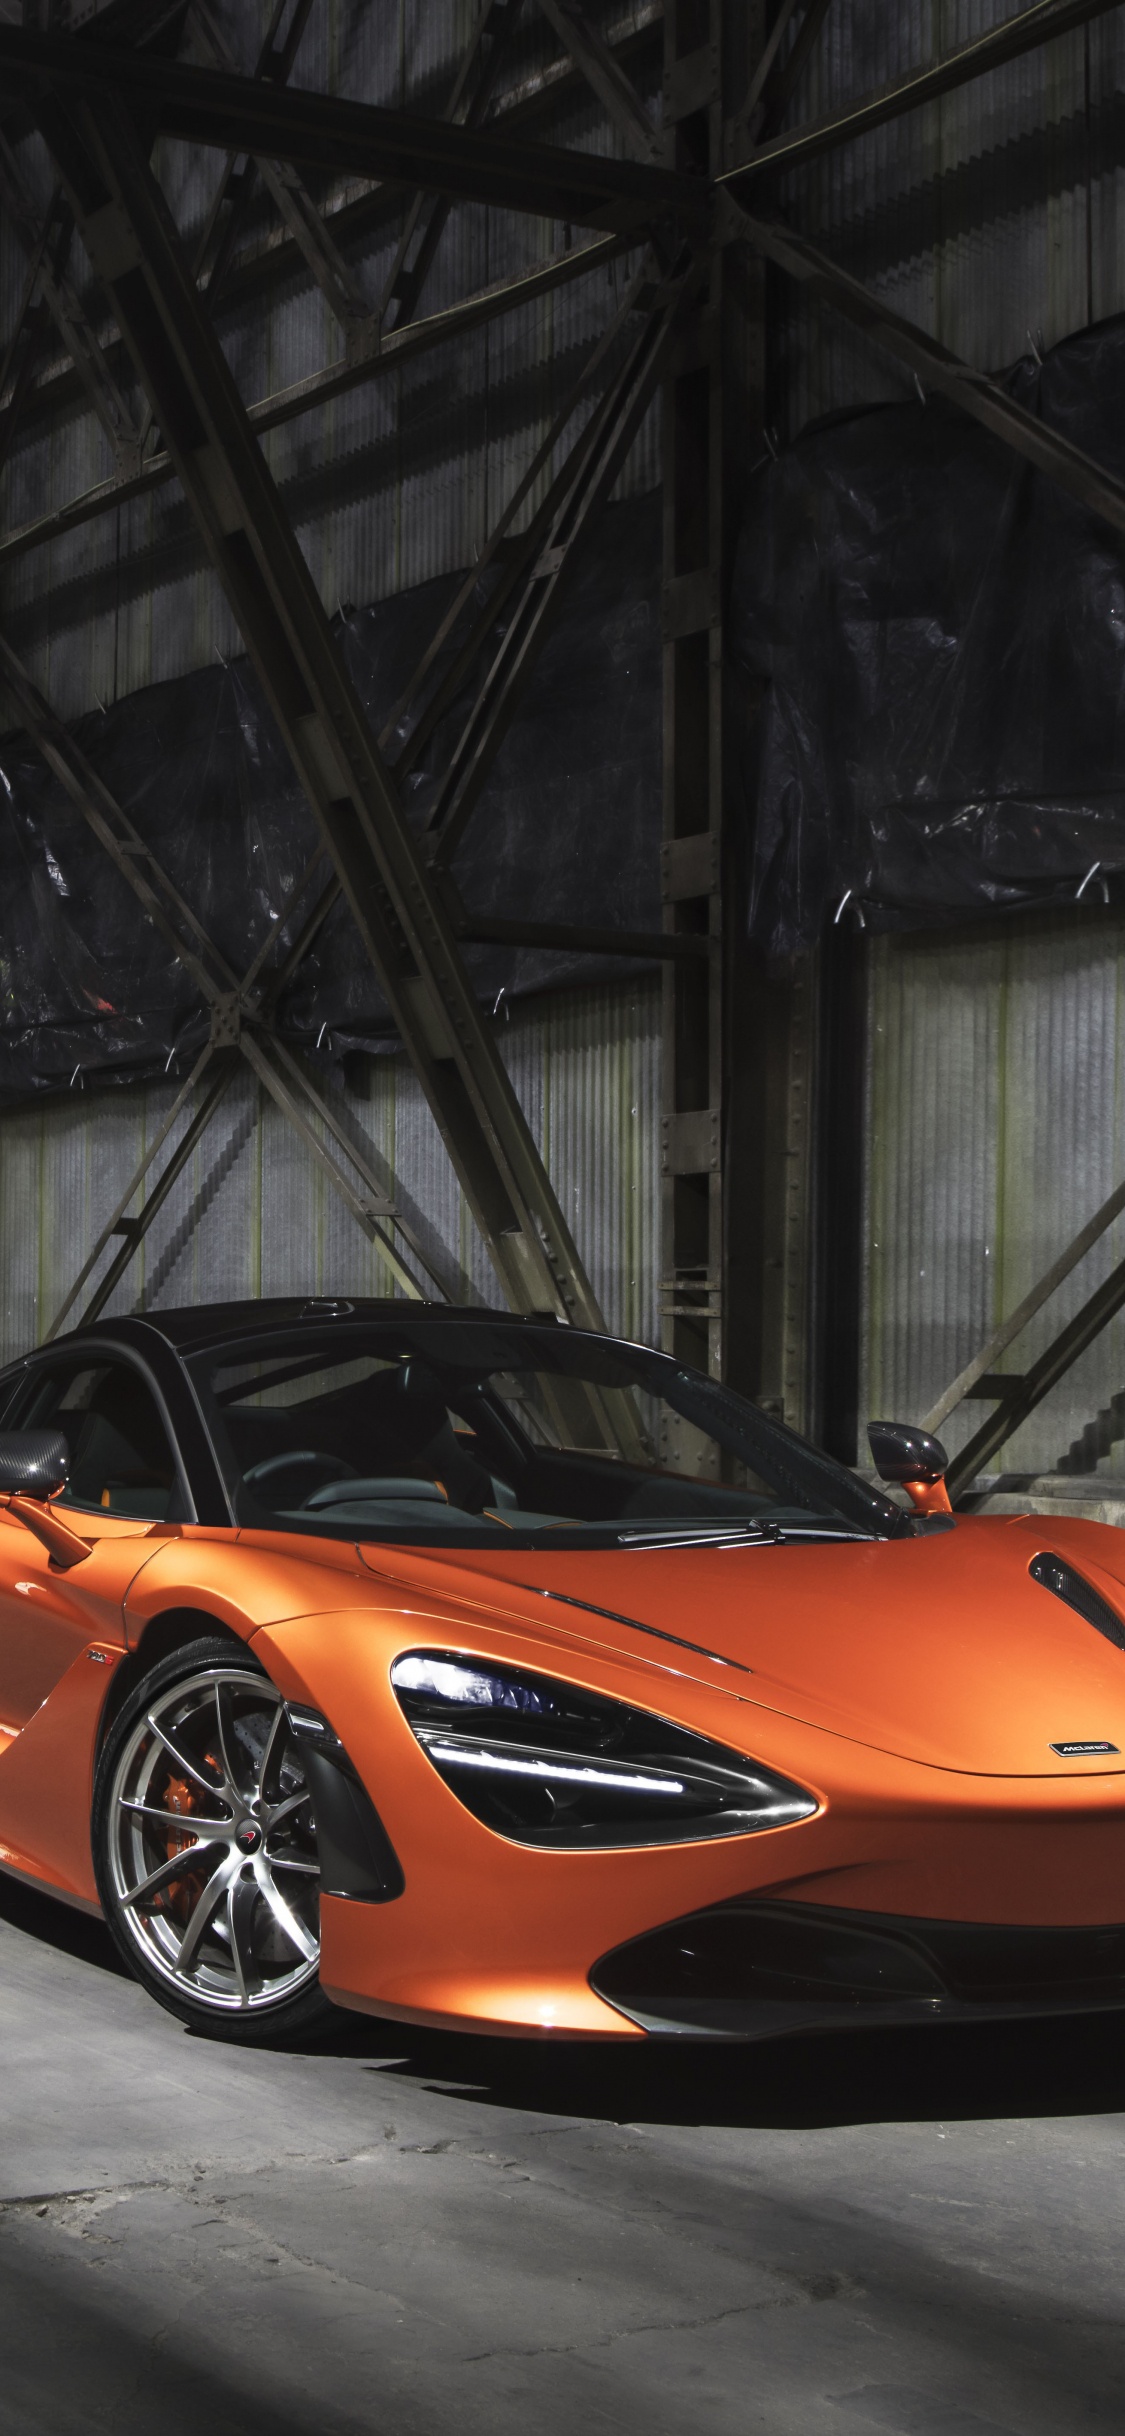 Lamborghini Aventador Orange Dans un Tunnel. Wallpaper in 1125x2436 Resolution